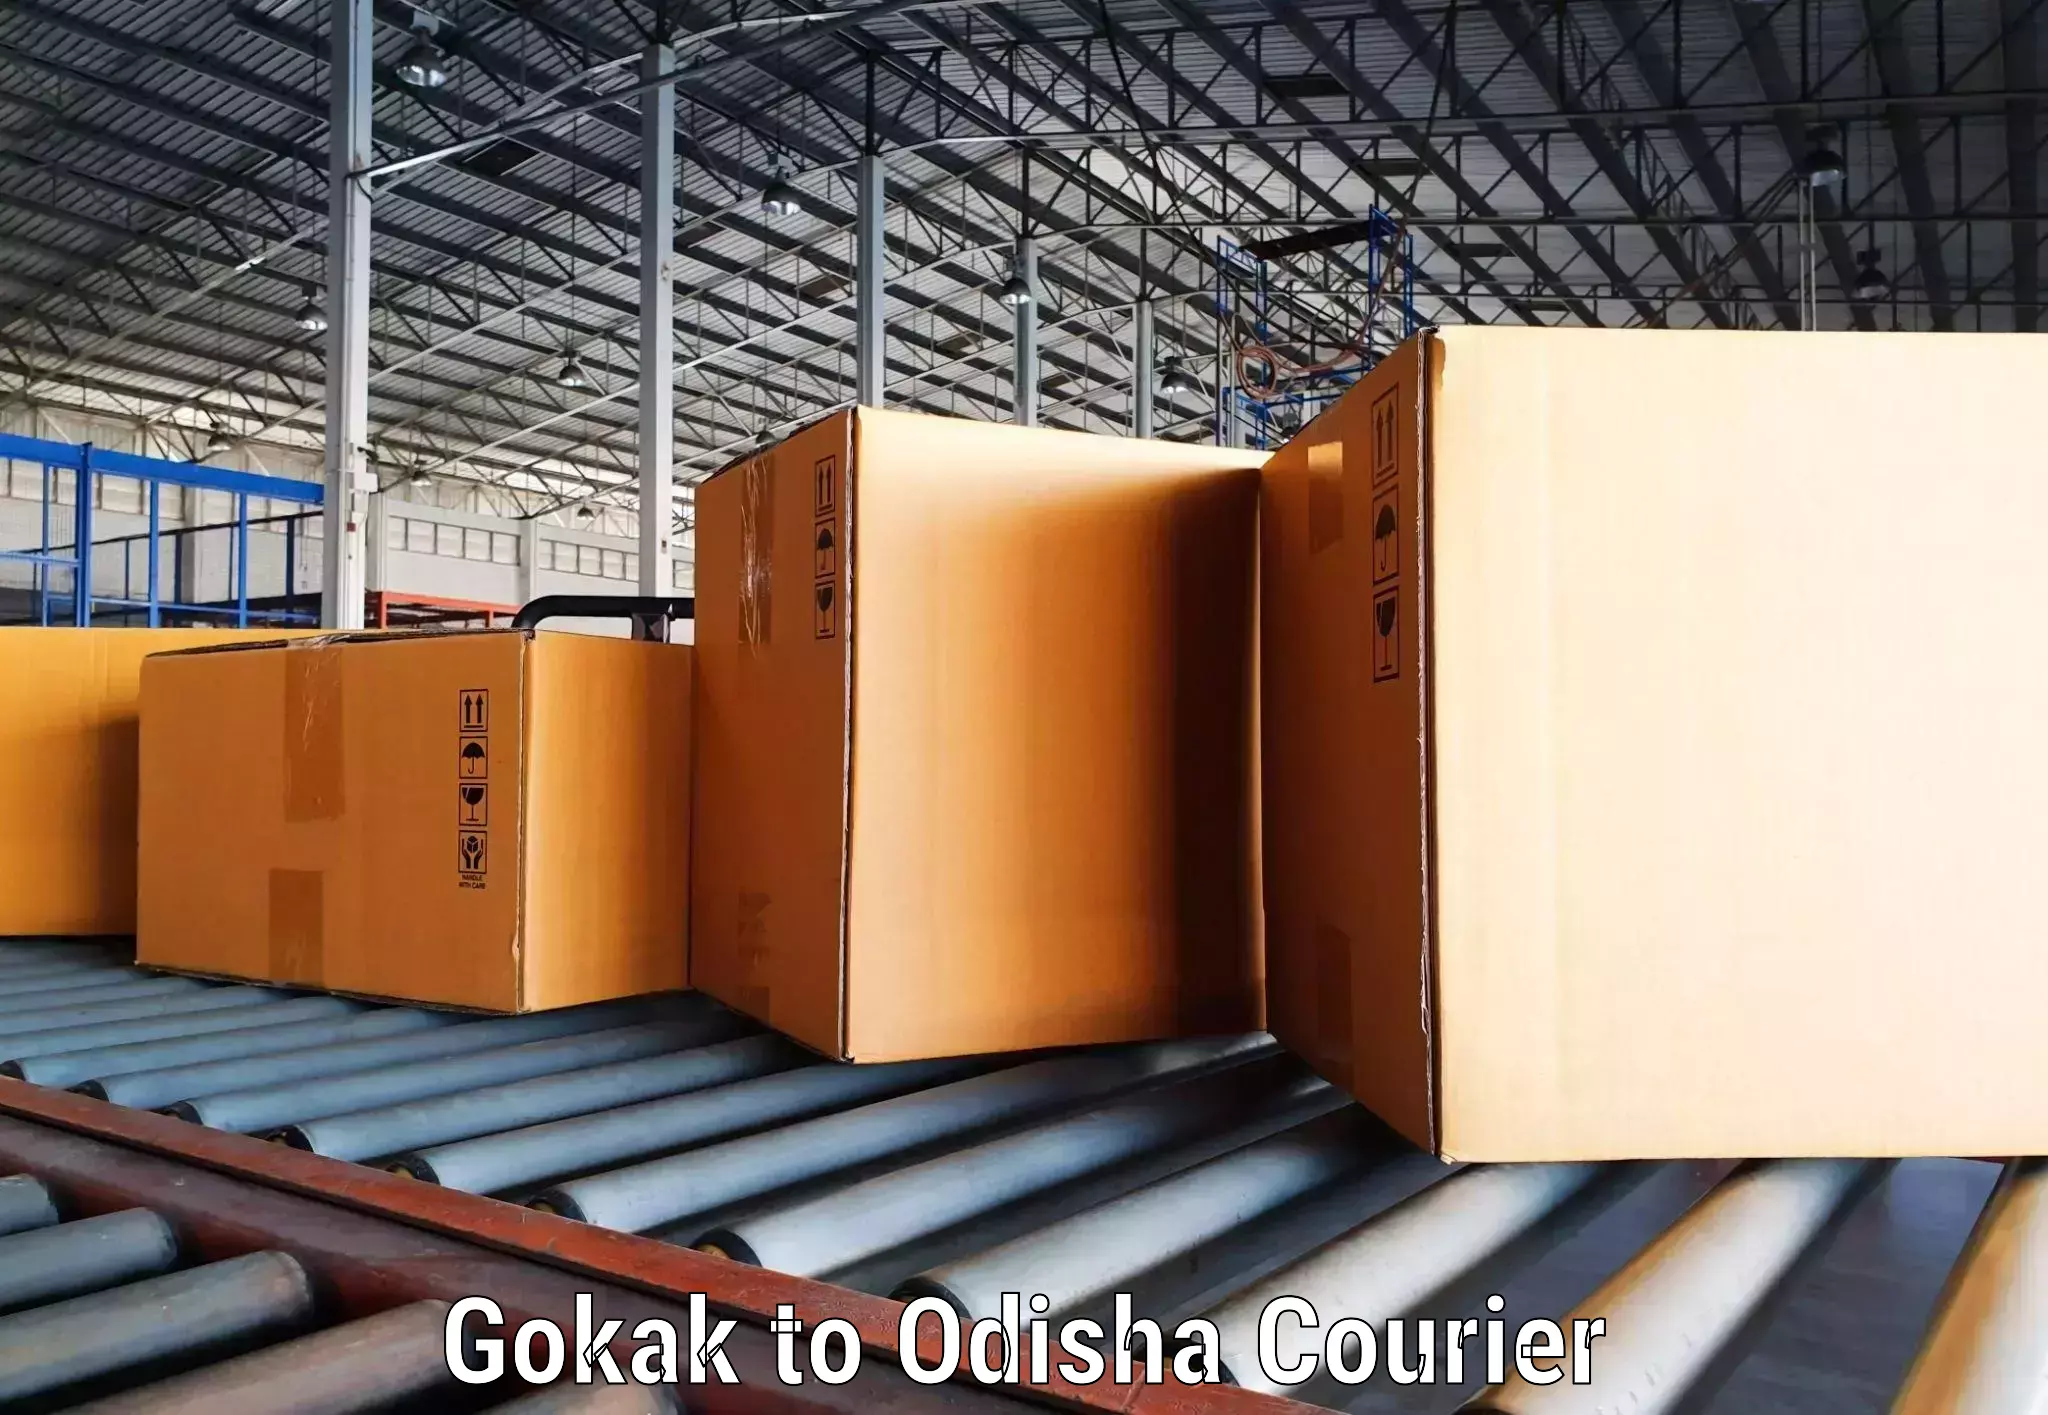 Customized shipping options Gokak to Mangalpur